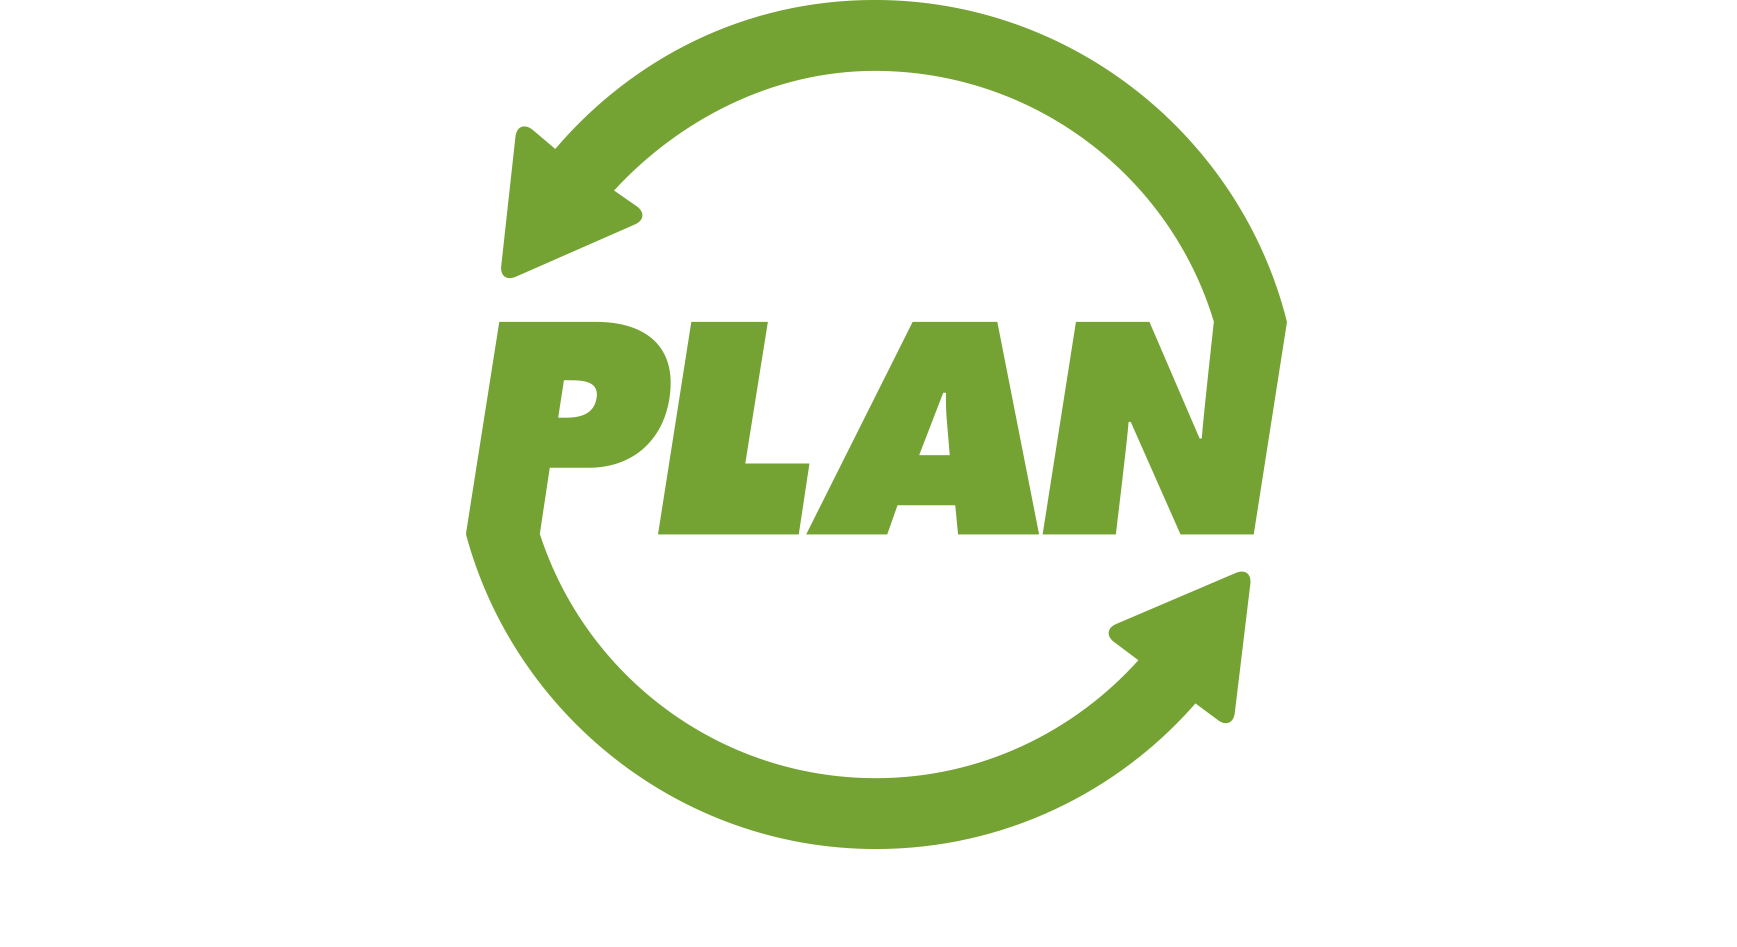 PLAN logo